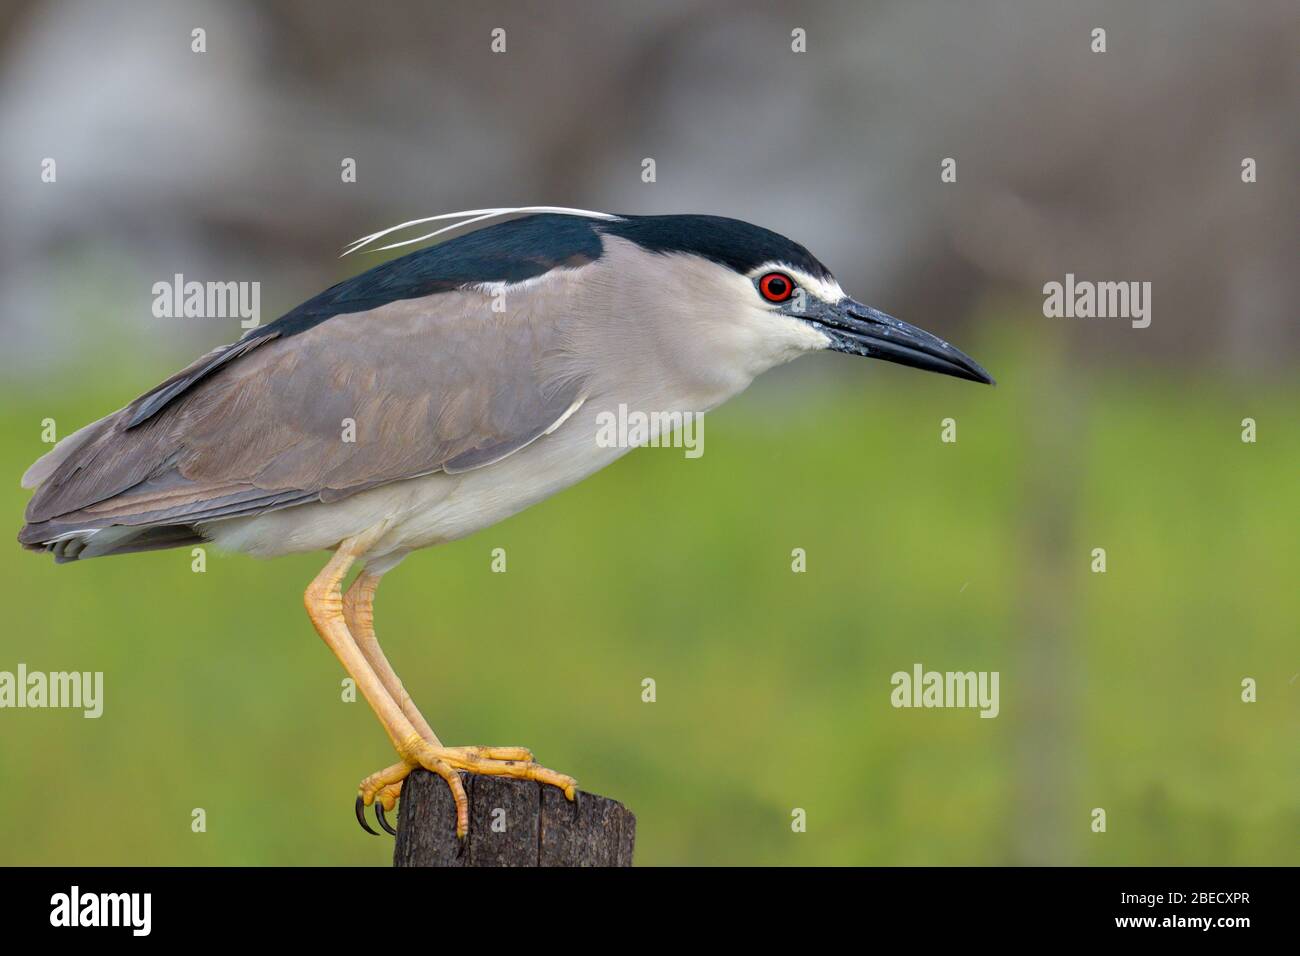 Oiseau d'eau heron de nuit à couronne noire Banque D'Images